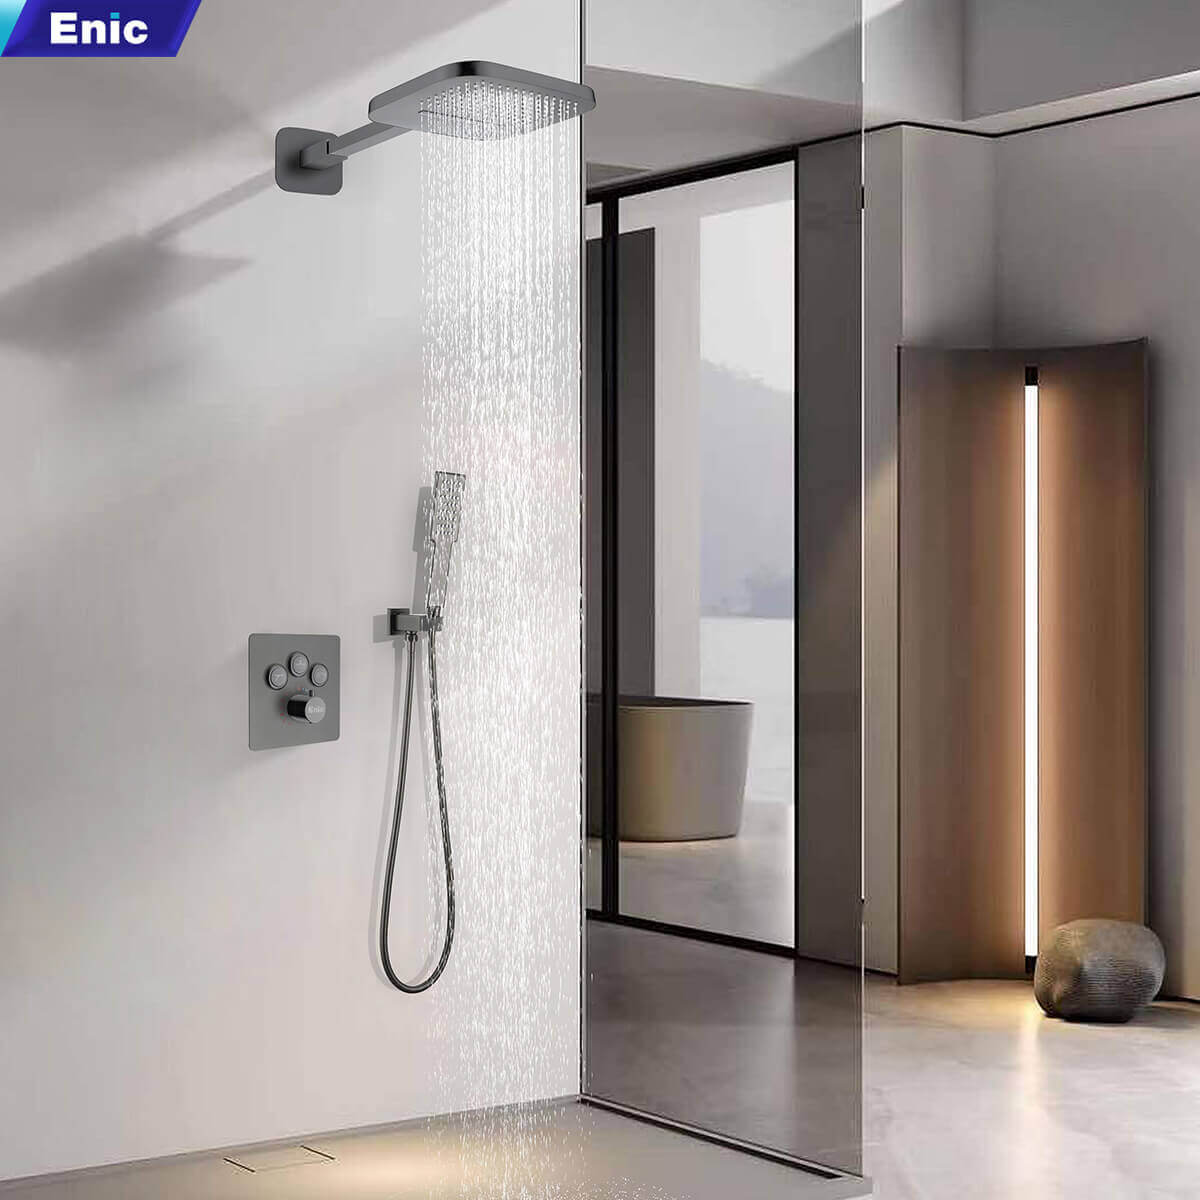 Sản phẩm sen tắm Enic được ứng dụng công nghệ mạ PVD